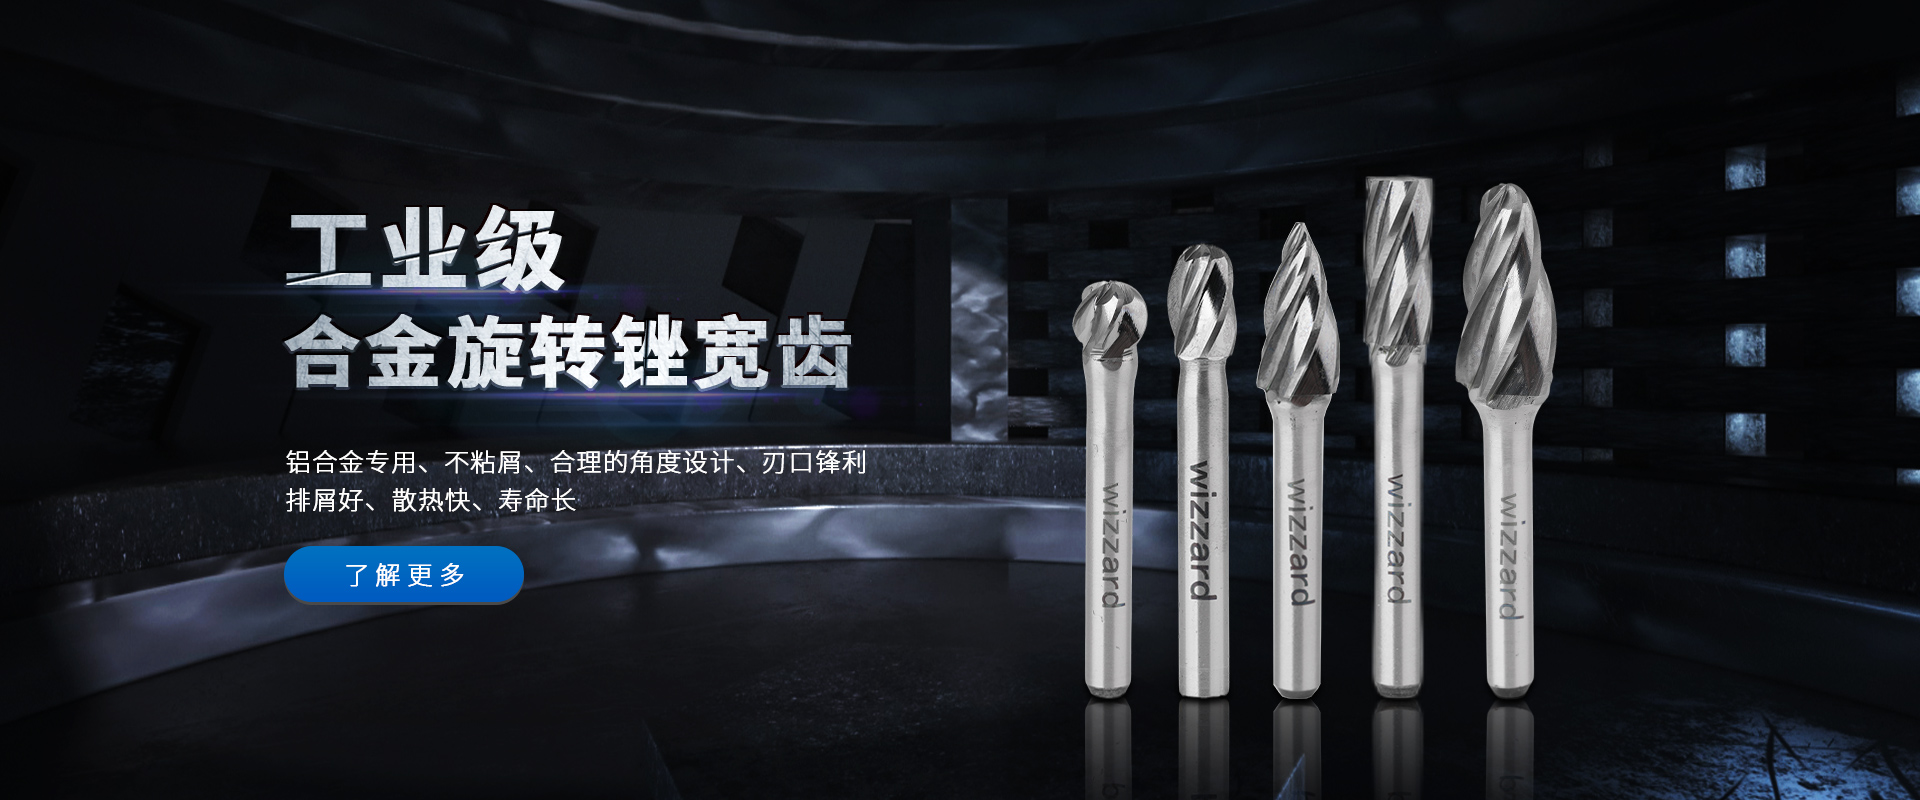 Dongguan Weize Hardware Co., Ltd